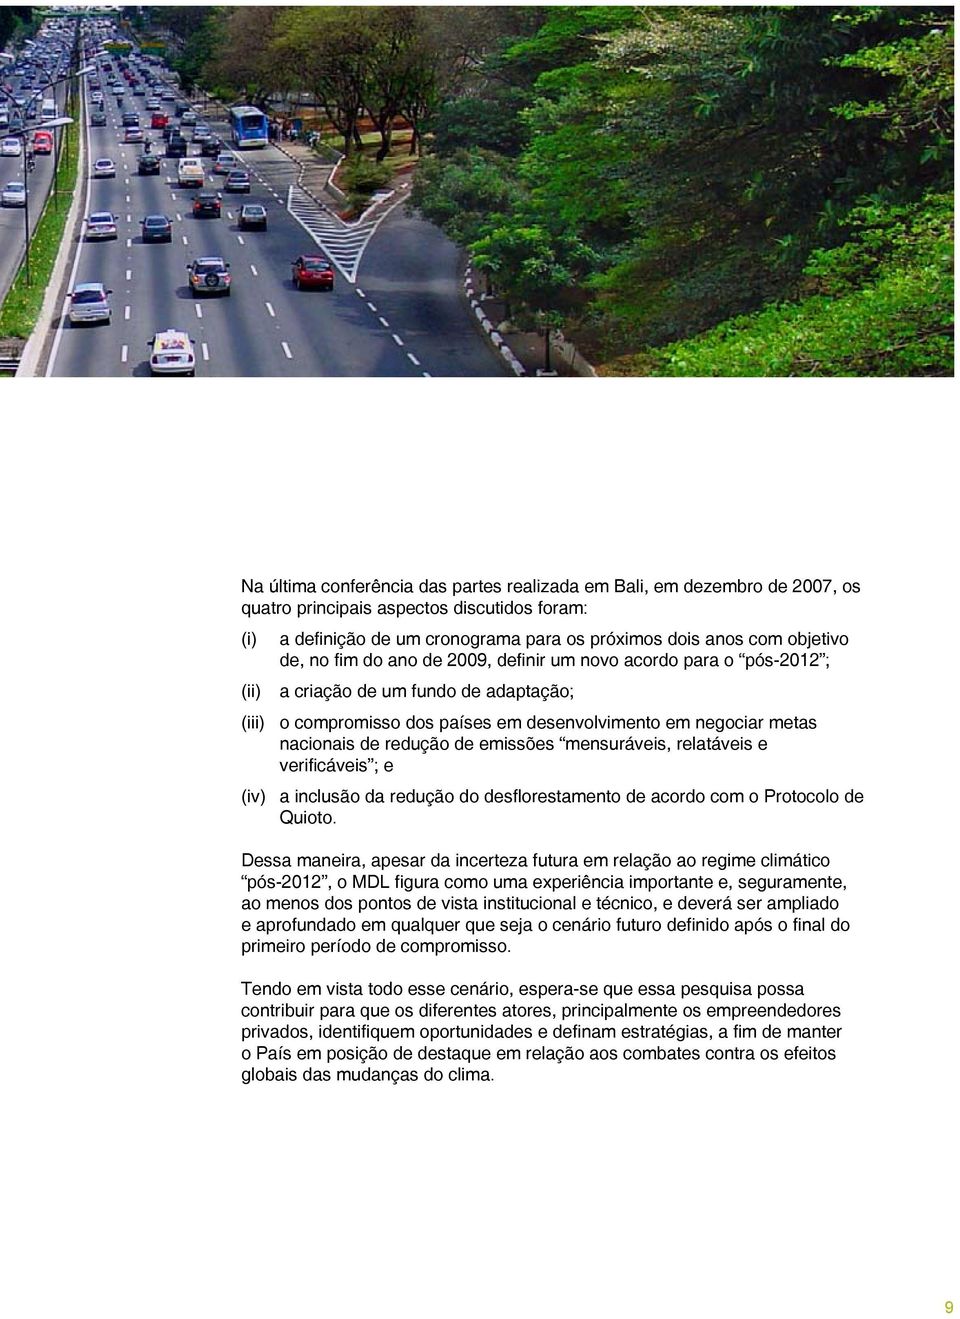 nacionais de redução de emissões mensuráveis, relatáveis e verificáveis ; e (iv) a inclusão da redução do desflorestamento de acordo com o Protocolo de Quioto.